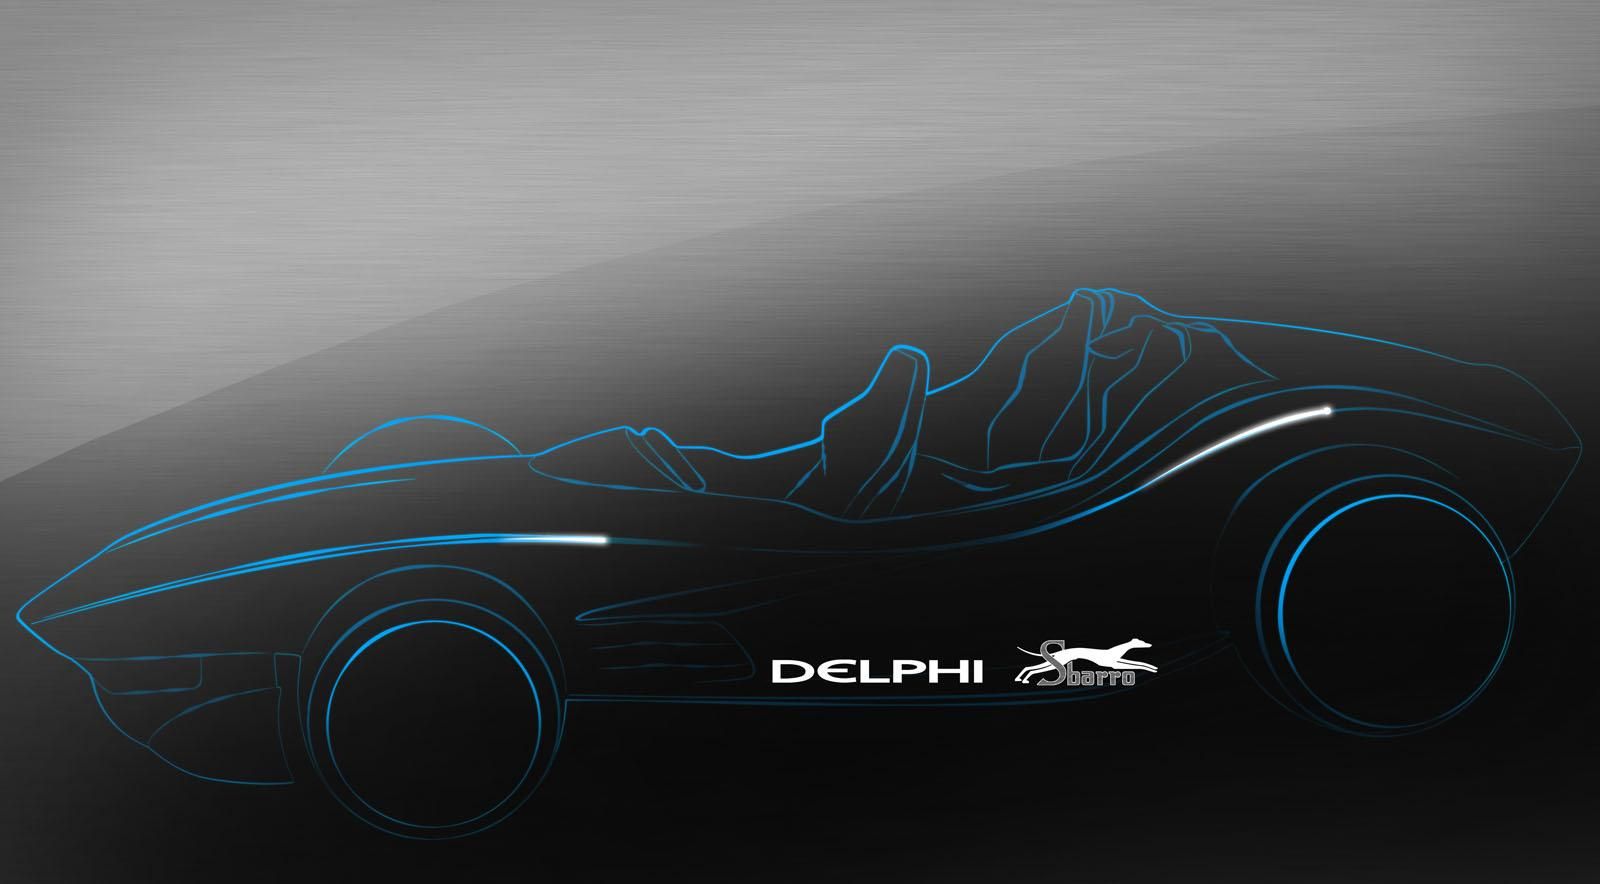 2012 Delphi F1for3 Concept